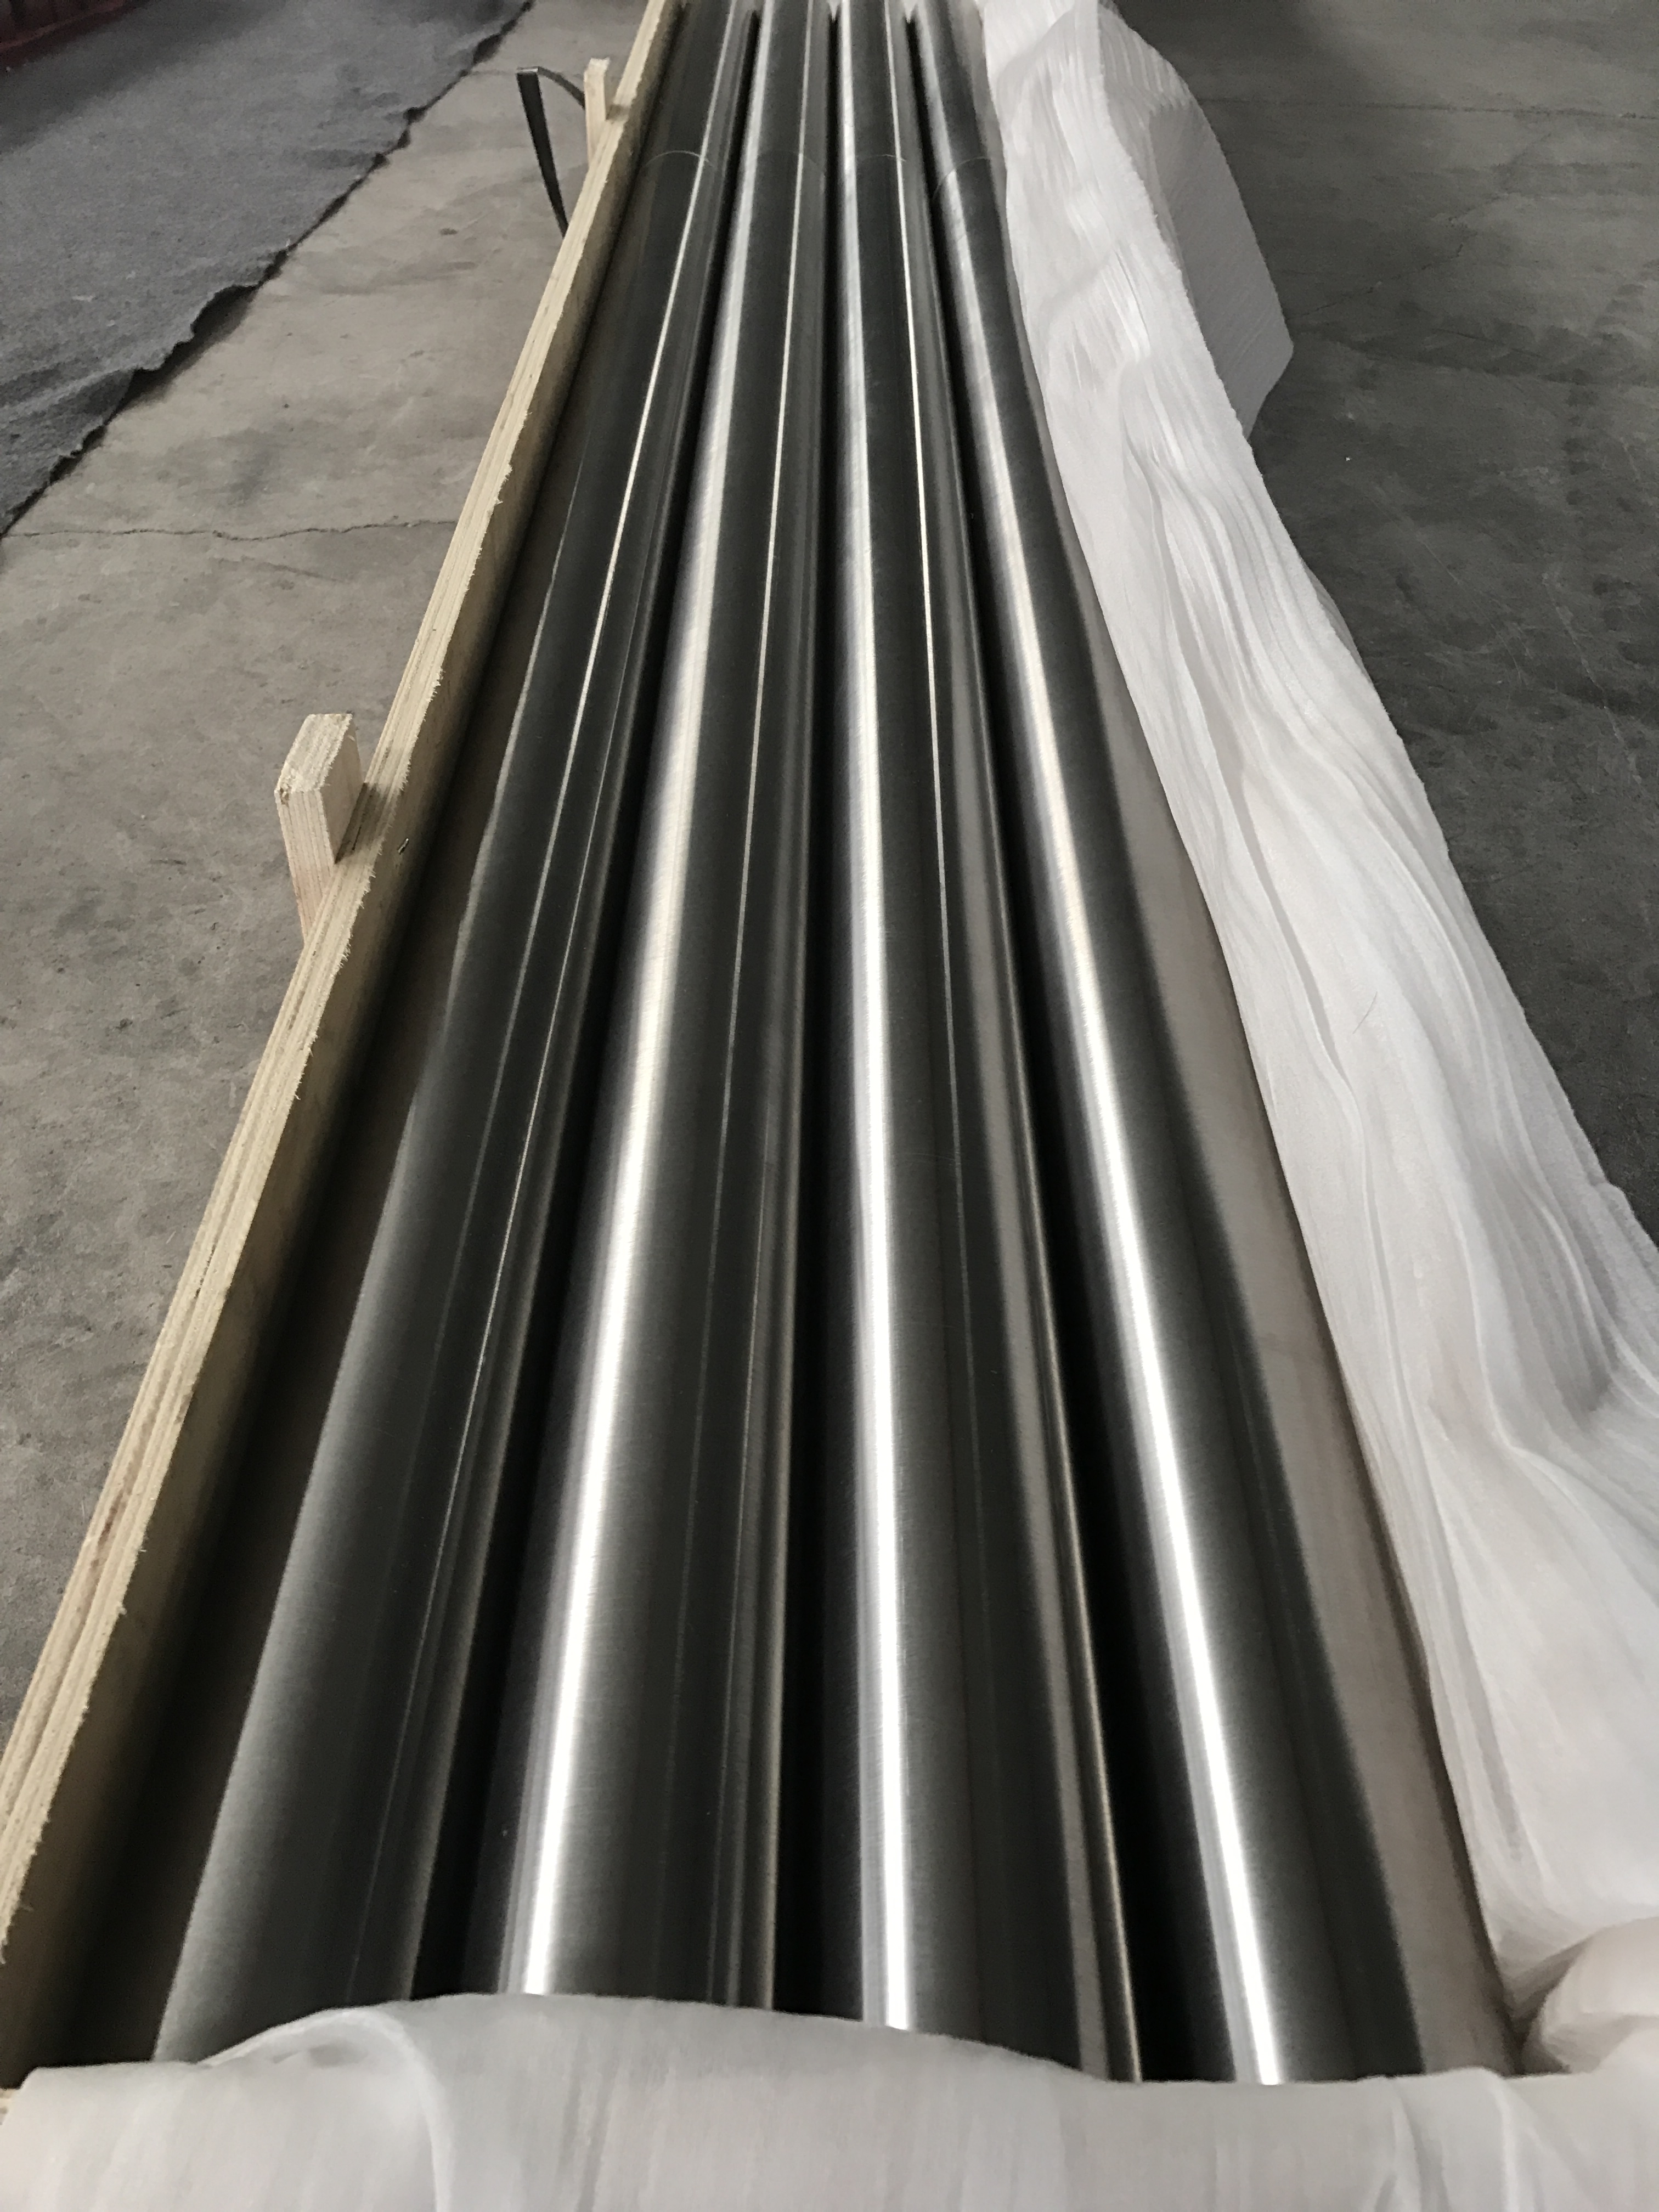 Grade1 | Industrial pure titanium